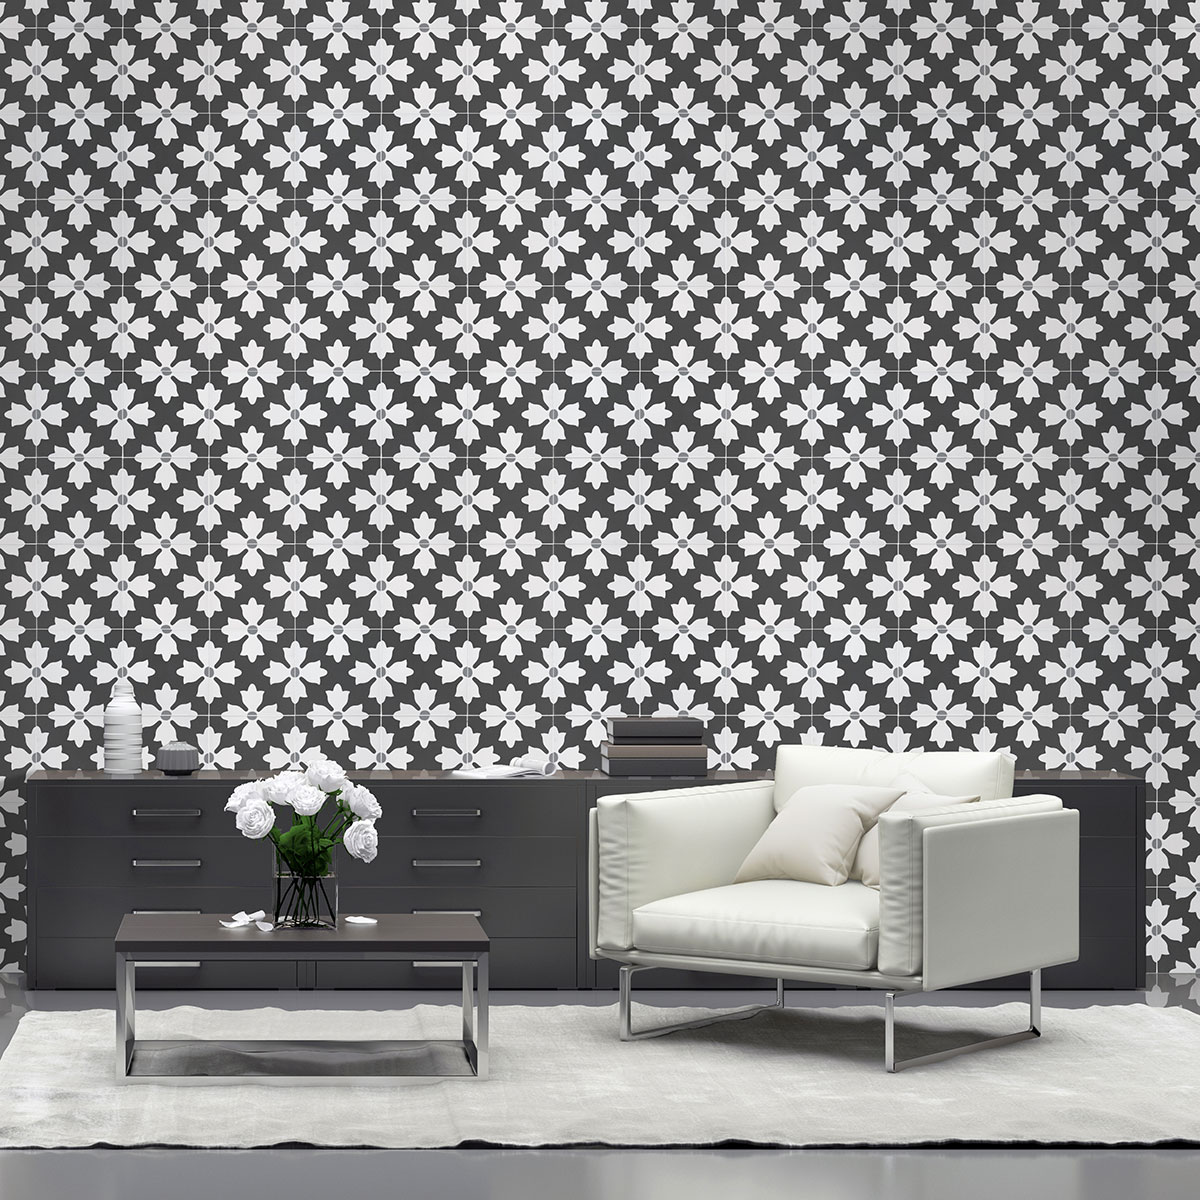 Kasbah Encaustic Tile on livingroom wall Room Scene